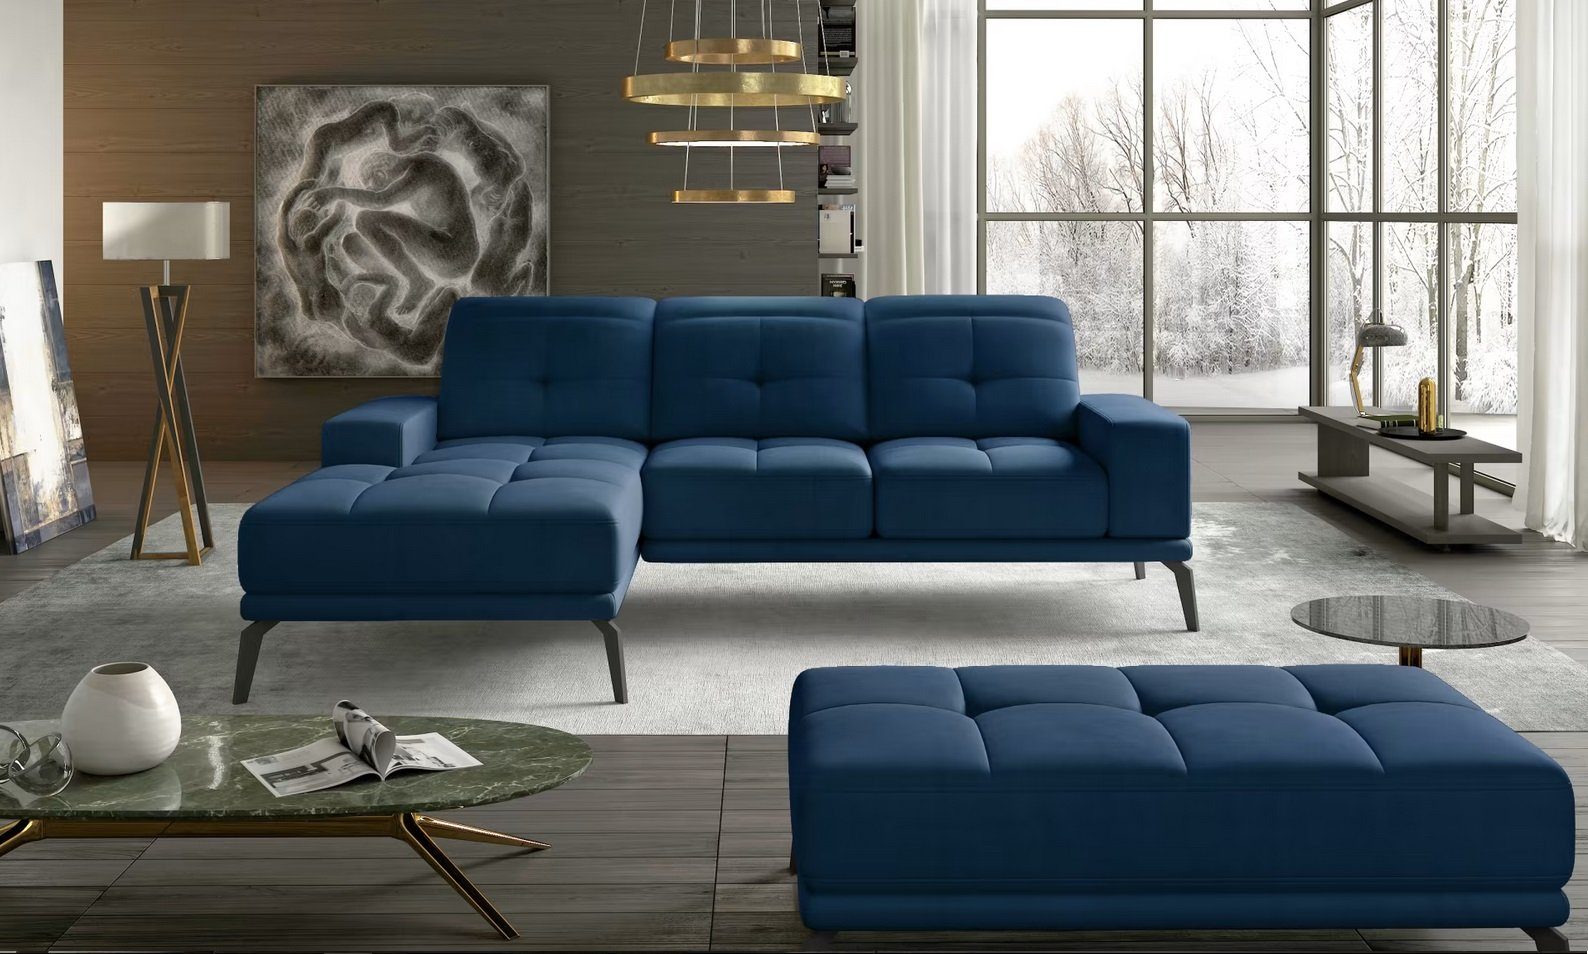 JVmoebel Ecksofa, Ecksofa L-Form luxus Couch